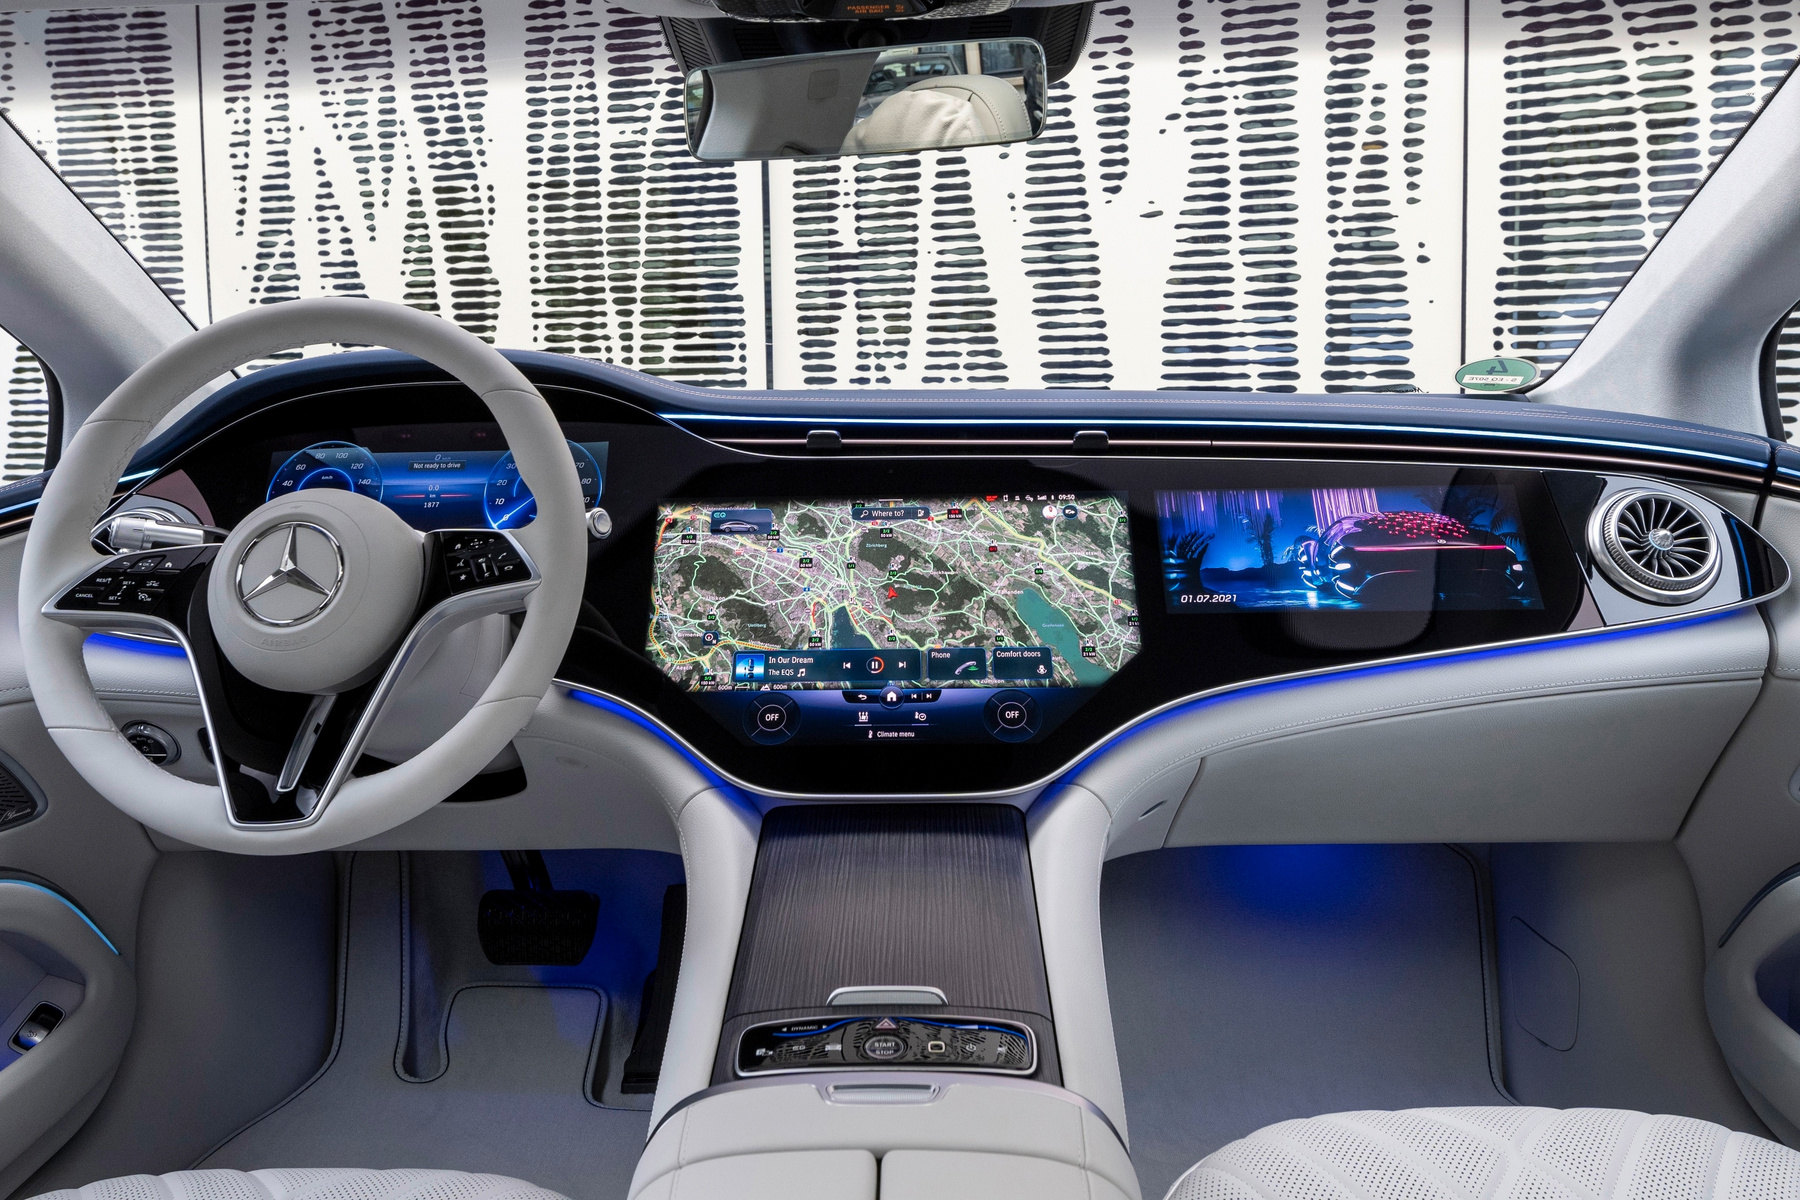 A jelenlegi tesla Model S-sel ellentétben az újban már vízszintes tájolású a központi érintőképernyő. Szórakoztatási célra ez a jobb, navigációra és kezelőfelületként a függőleges lenne. És, ha elfordíthatóra csinálnák?